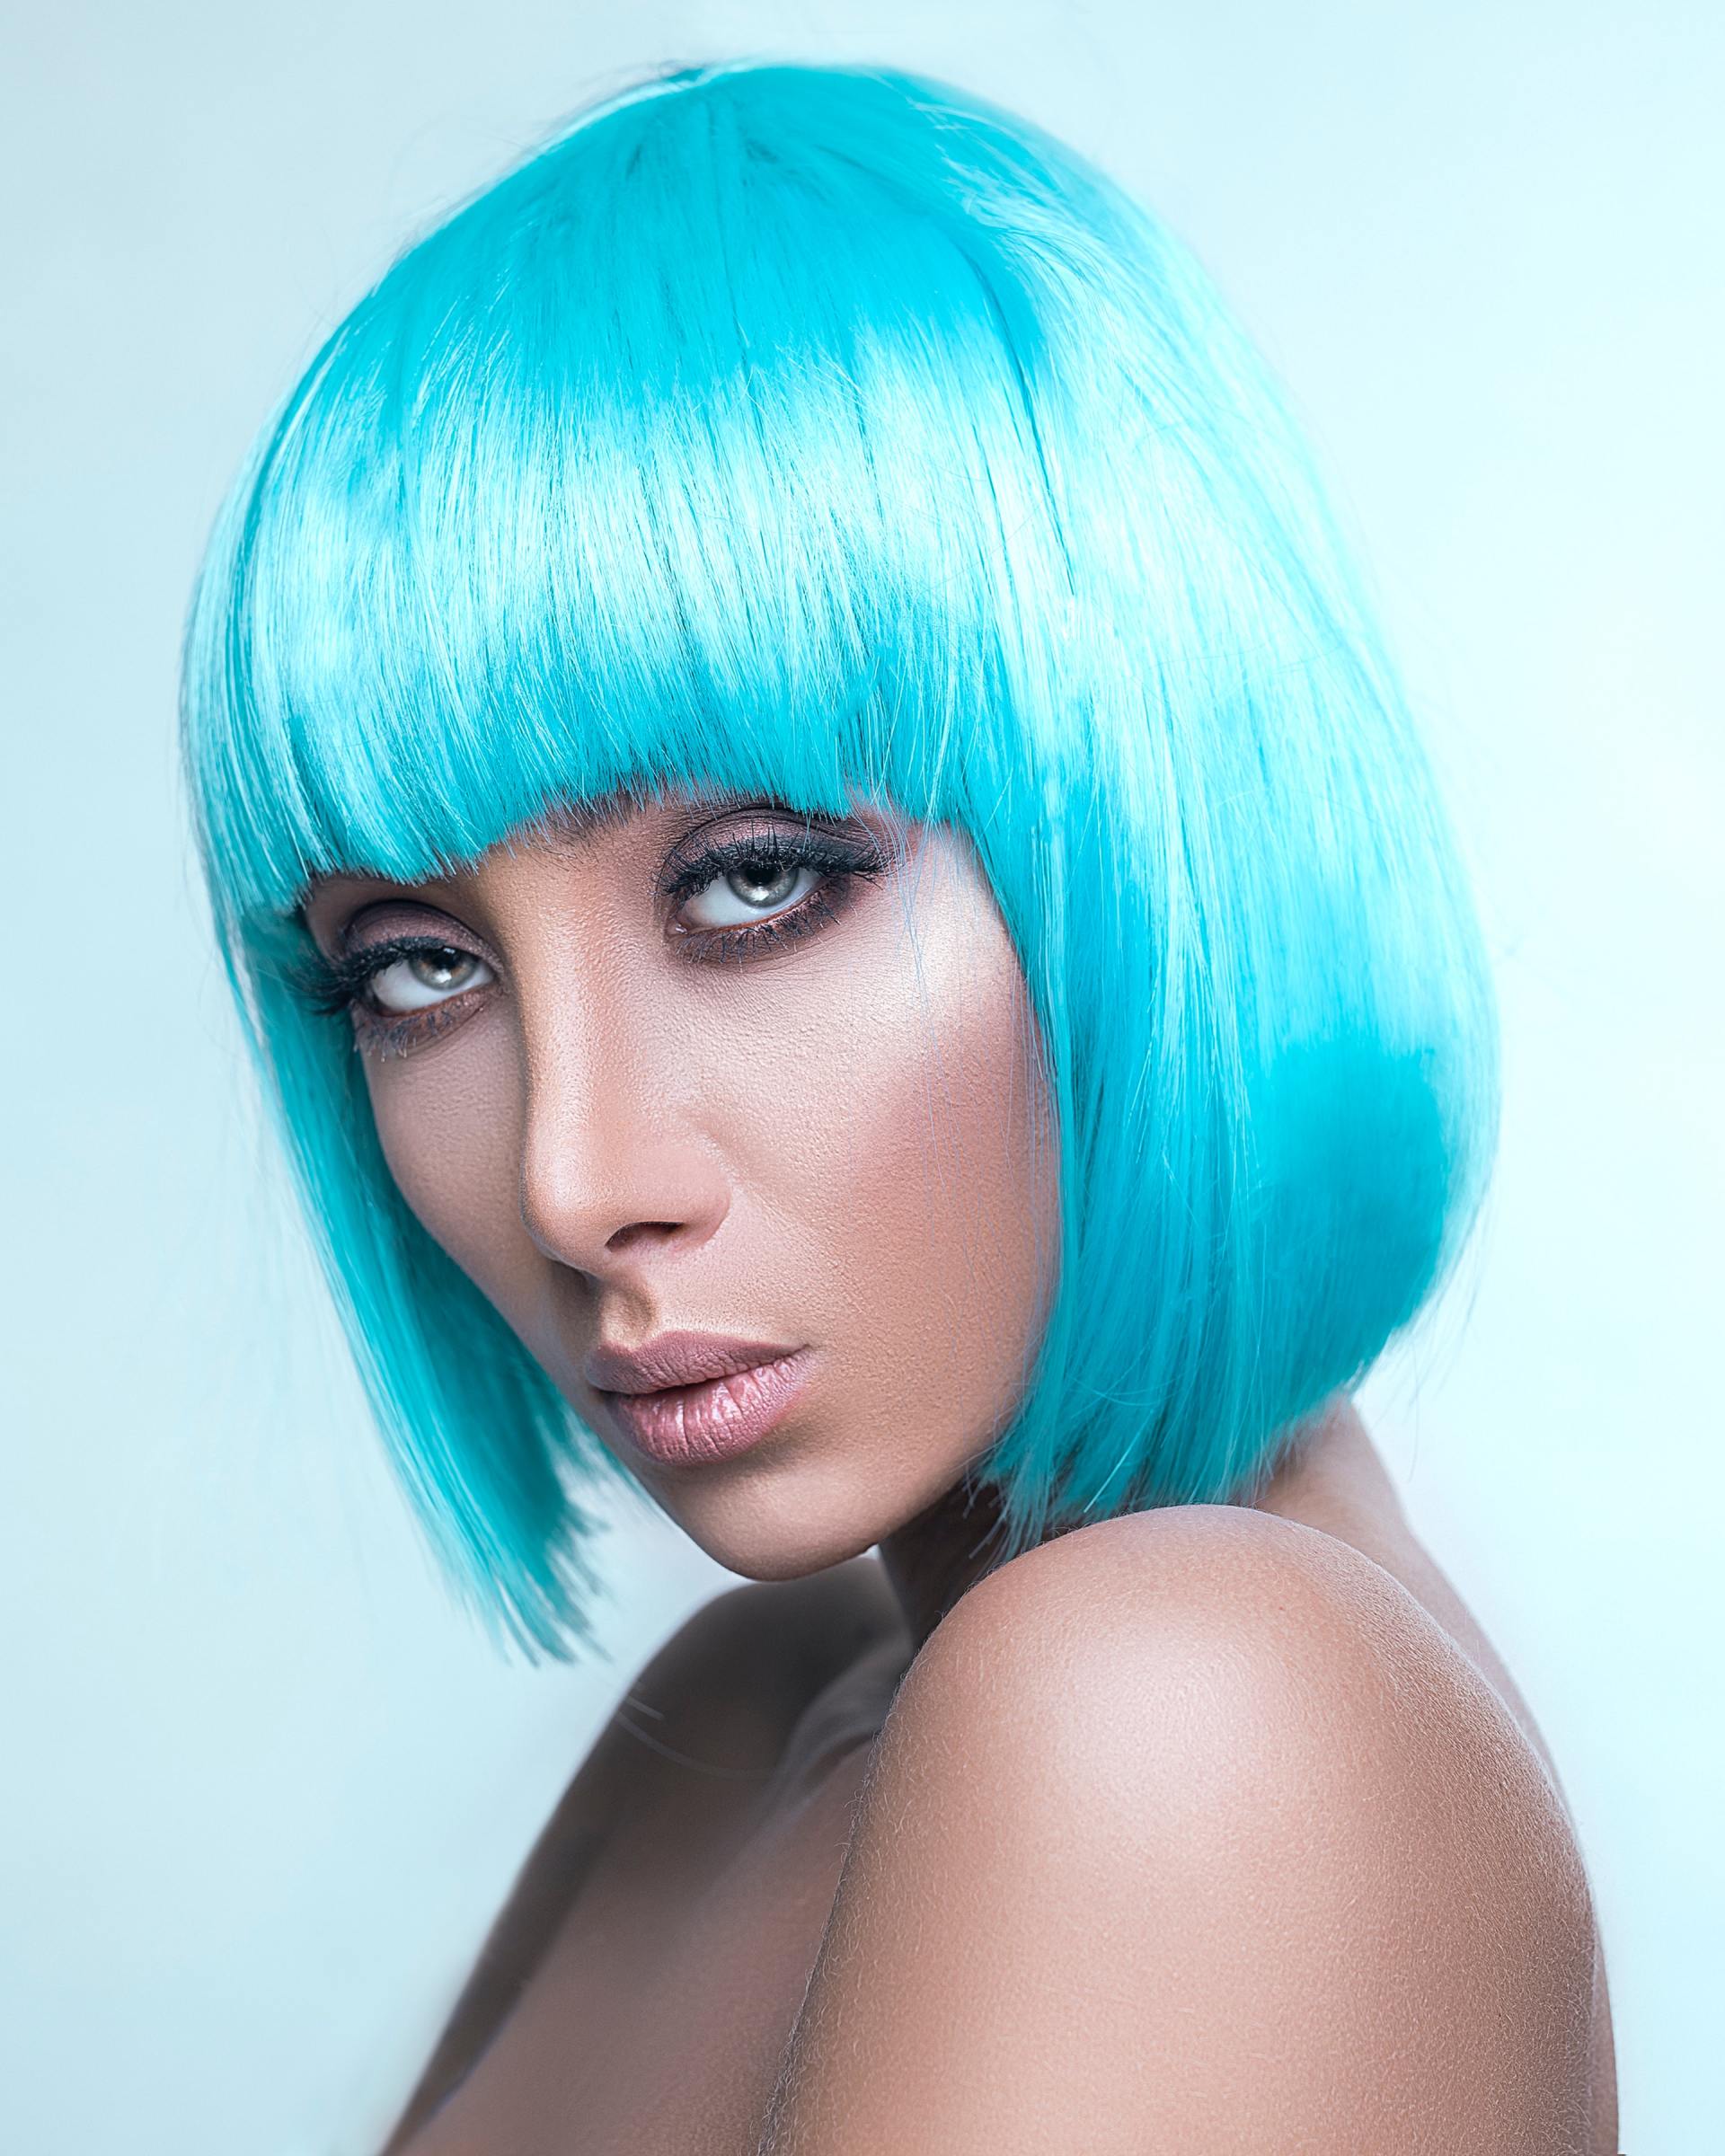 De beste kleurtechnieken voor uw haar volgens kappers